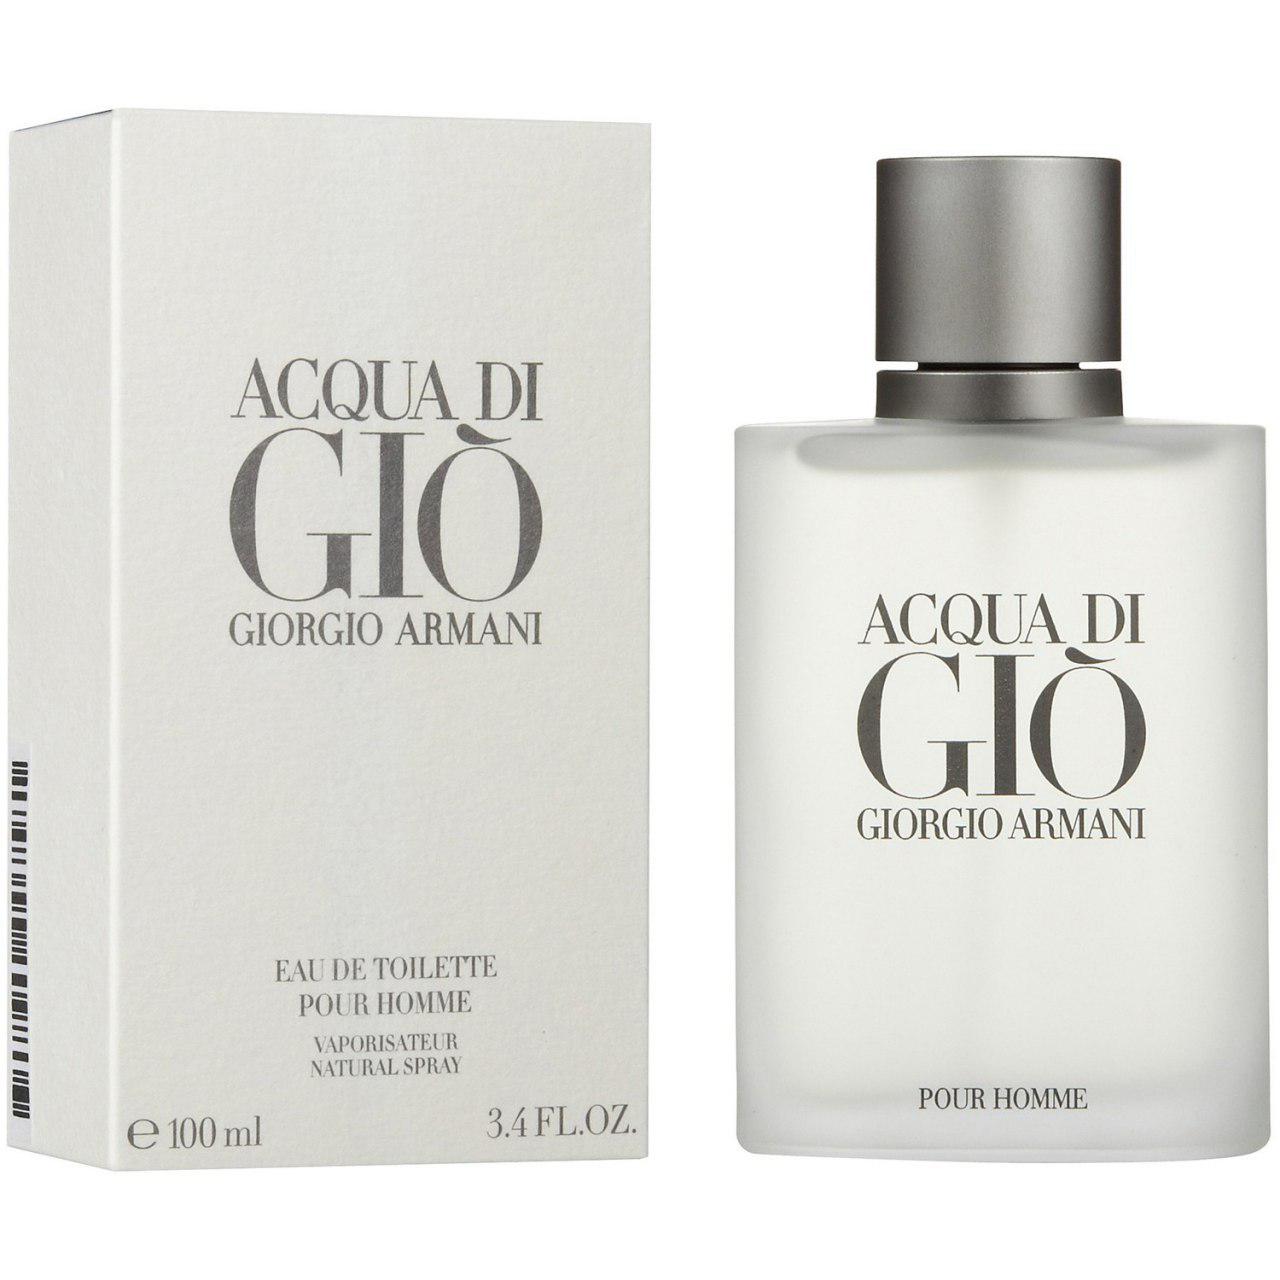 ادو تویلت مردانه جورجیو آرمانی مدل Acqua di Gio حجم 200 میلی لیتر